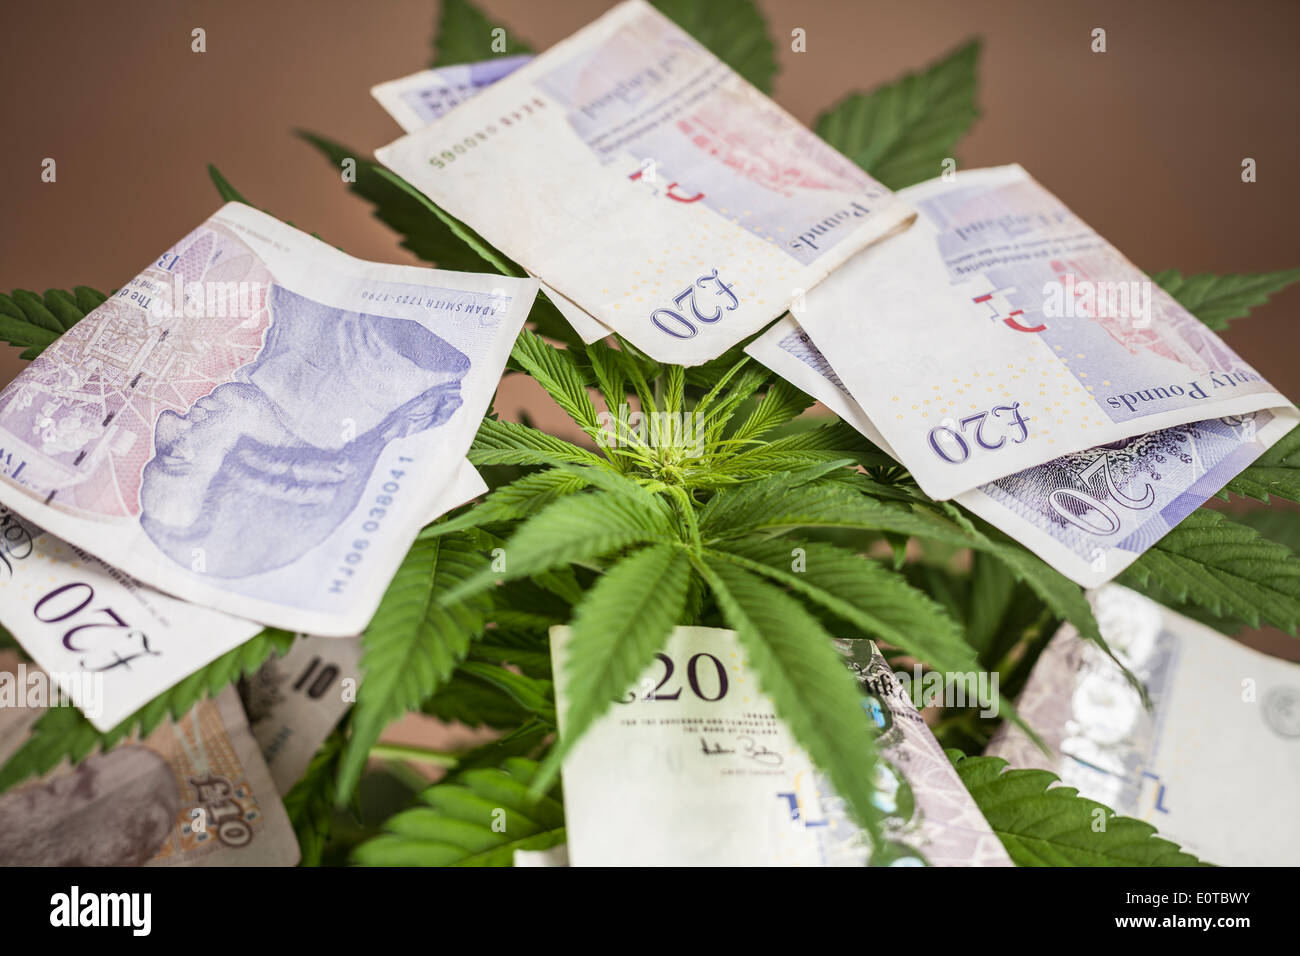 Concepto de negocio de marihuana. La planta de la cannabis con billetes en moneda británica. Foto de stock